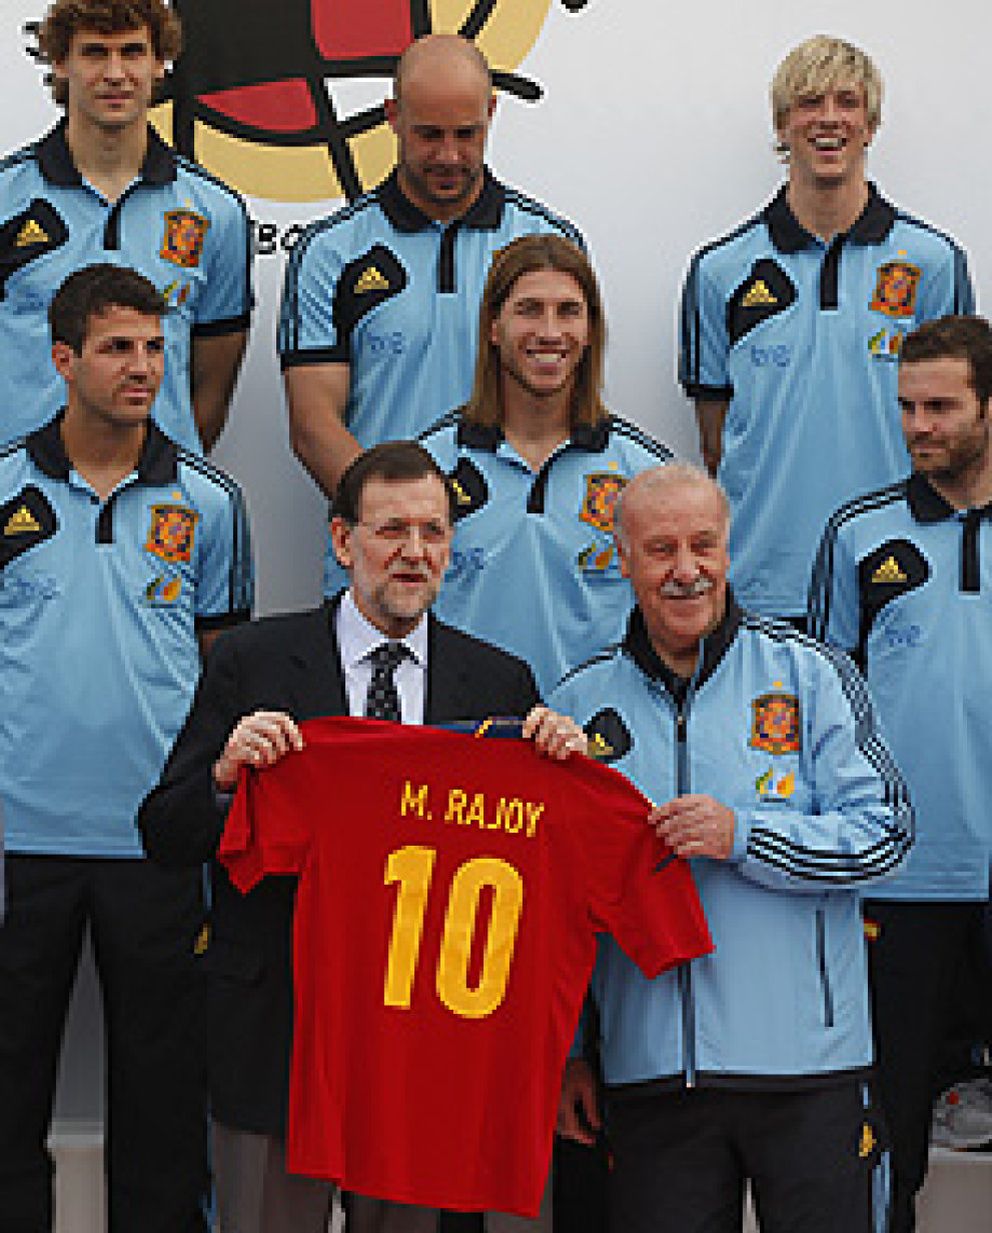 Foto: Rajoy llegó a Las Rozas a desear suerte a la Selección y al final se la desearon a él